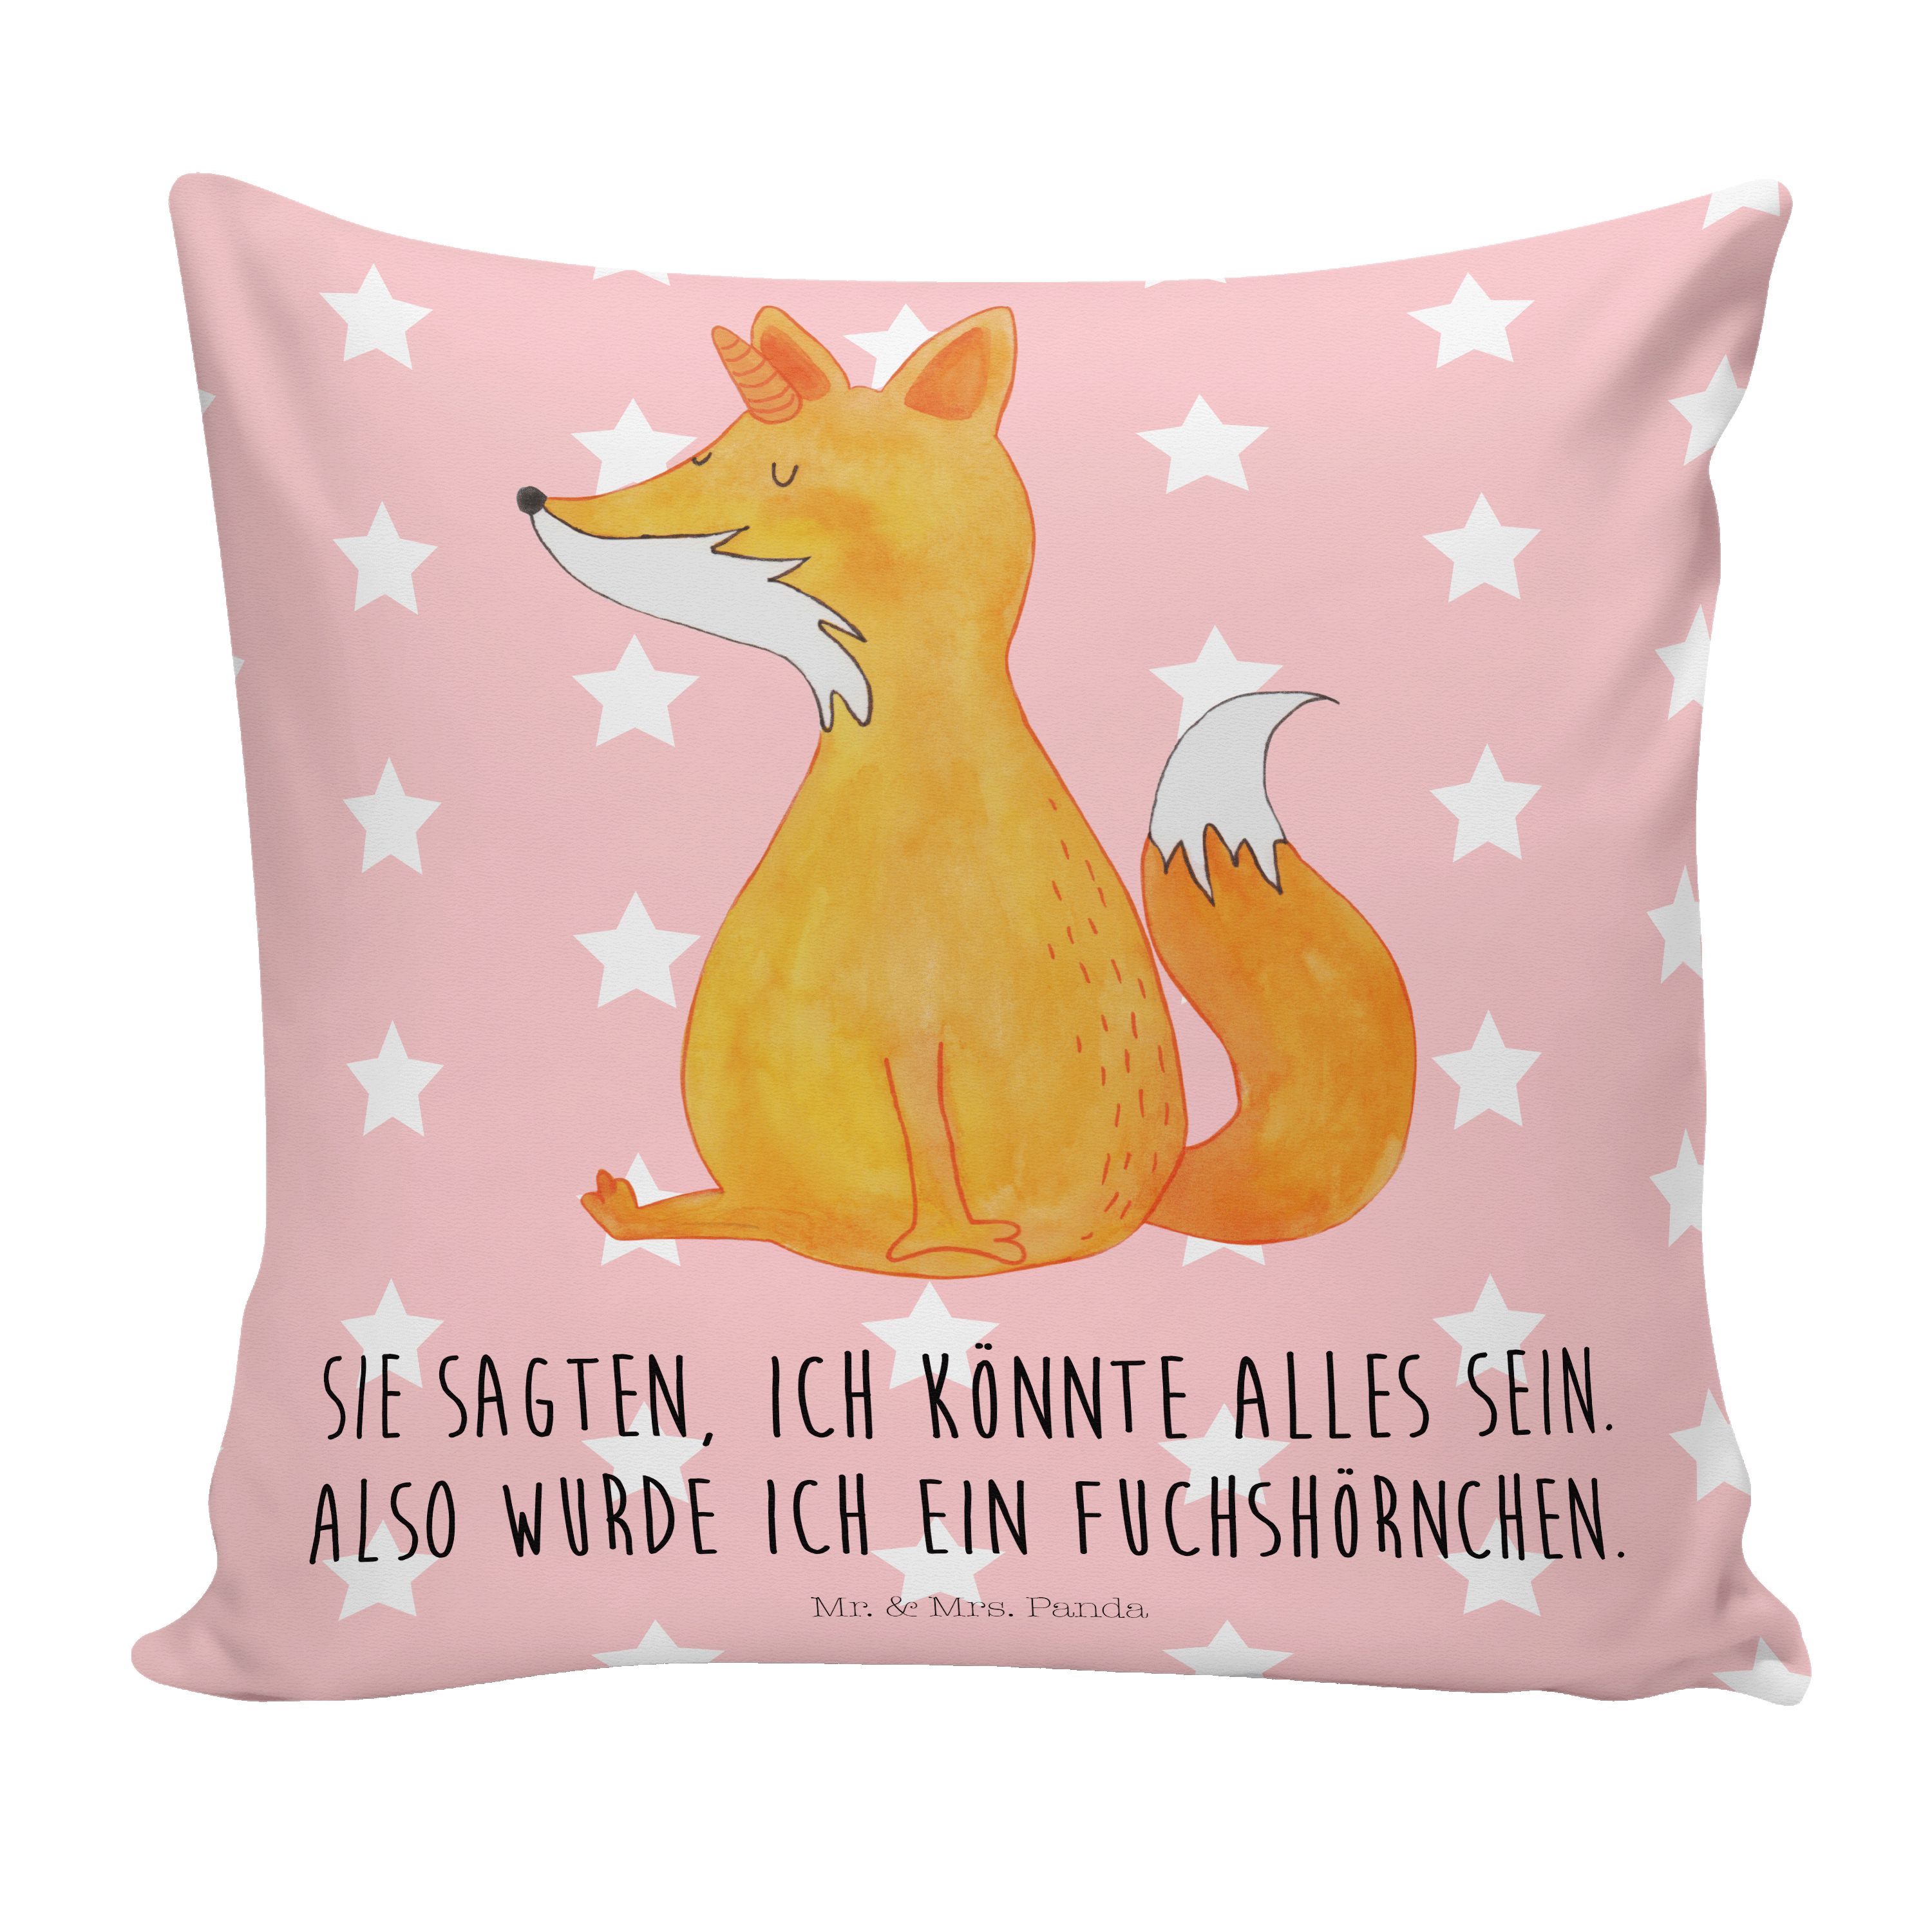 Mrs. Füchse, & Sofakissen, Fuchshörnchen Dekokissen Rot - Mr. - Pastell Geschenk, Panda Motivkiss